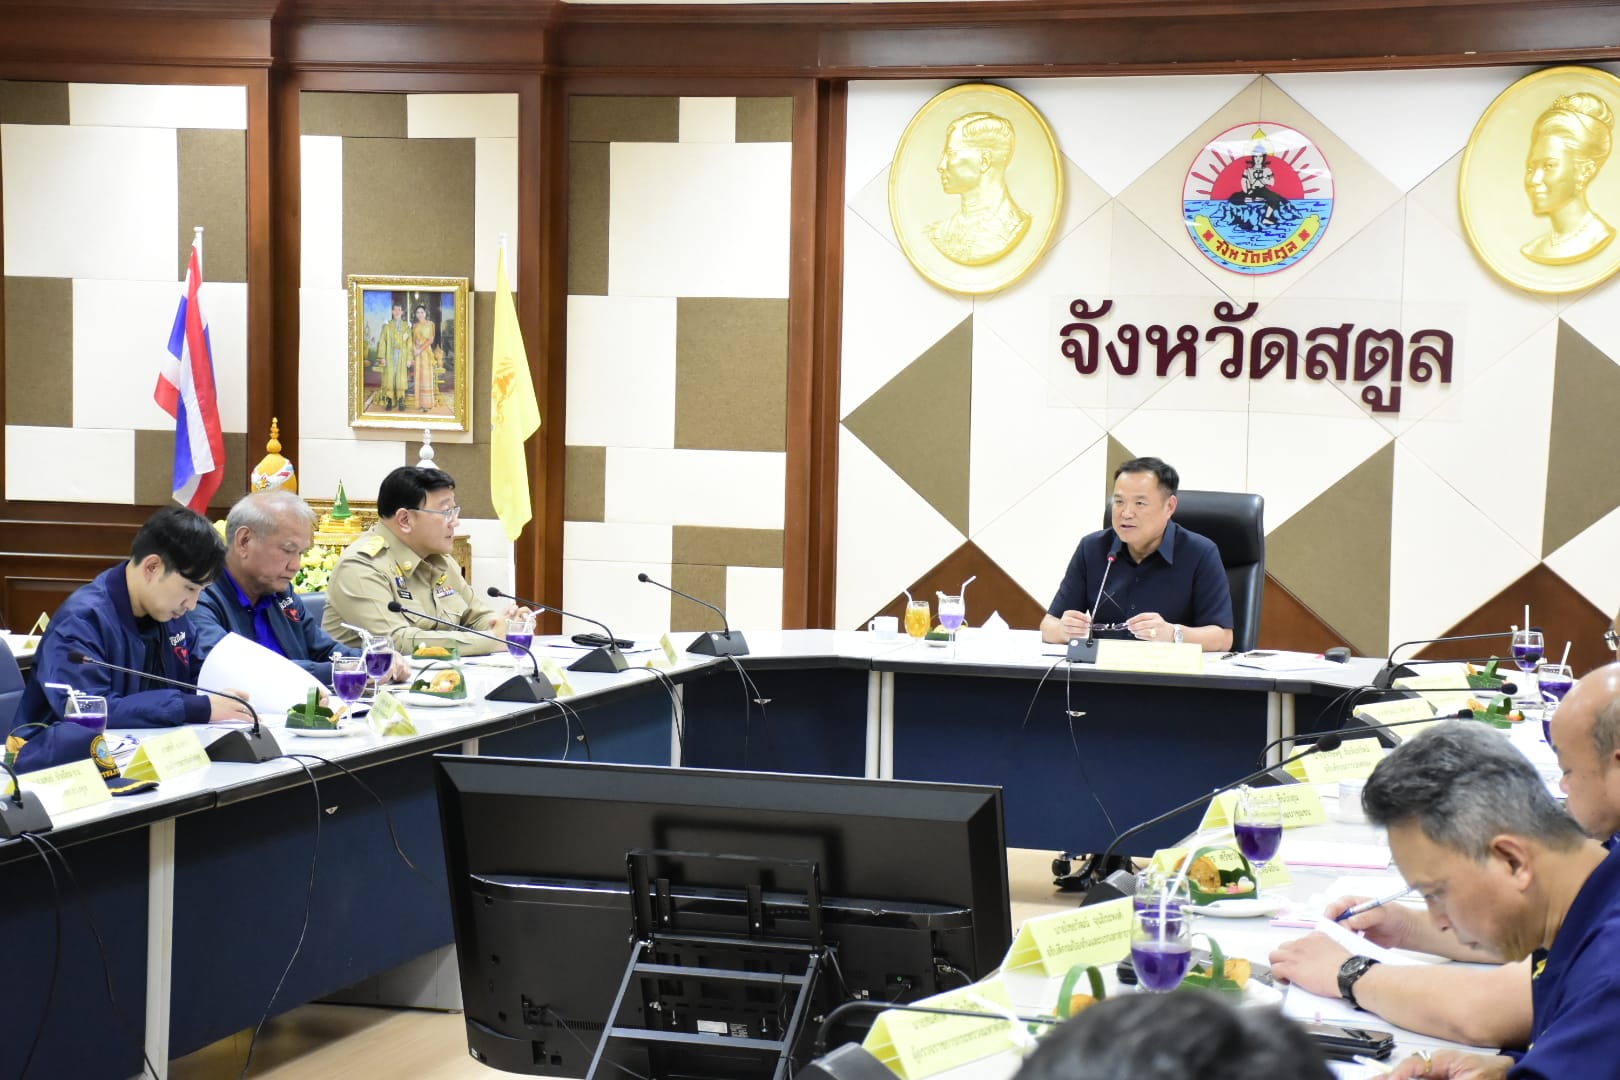 รองนายกรัฐมนตรีและรัฐมนตรีว่าการกระทรวงมหาดไทย ลงพื้นที่ติดตามการขับเคลื่อนตามนโยบายรัฐบาลและกระทรวงมหาดไทย ในพื้นที่จังหวัดสตูล